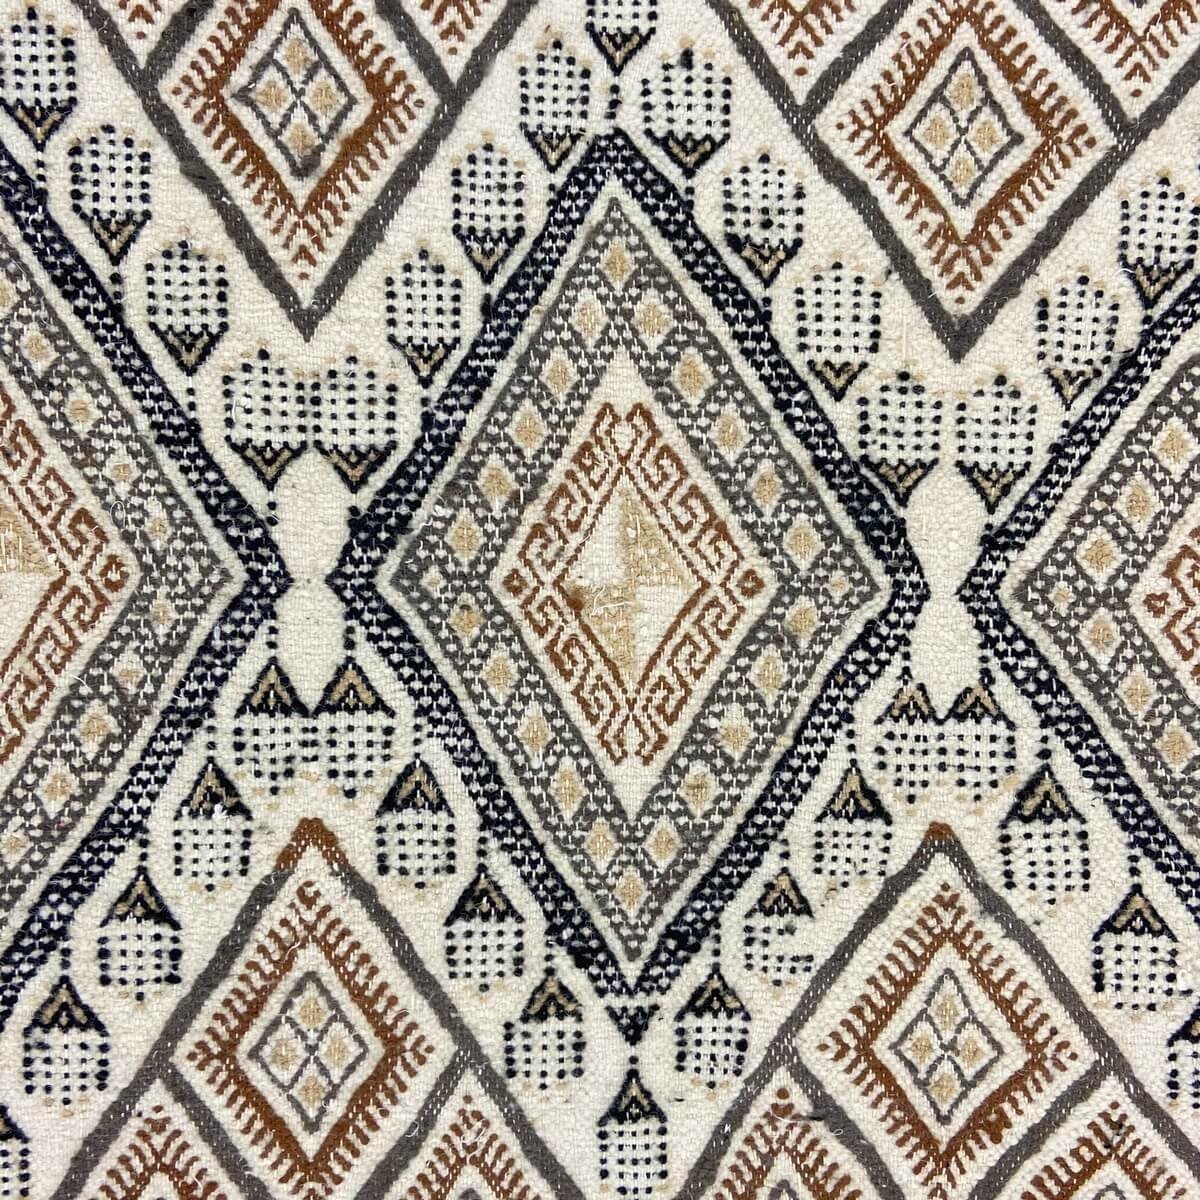 Berber tapijt Tapijt Margoum Damdakul 115x190 Wit/Beige (Handgeweven, Wol, Tunesië) Tunesisch Margoum Tapijt uit de stad Kairoua